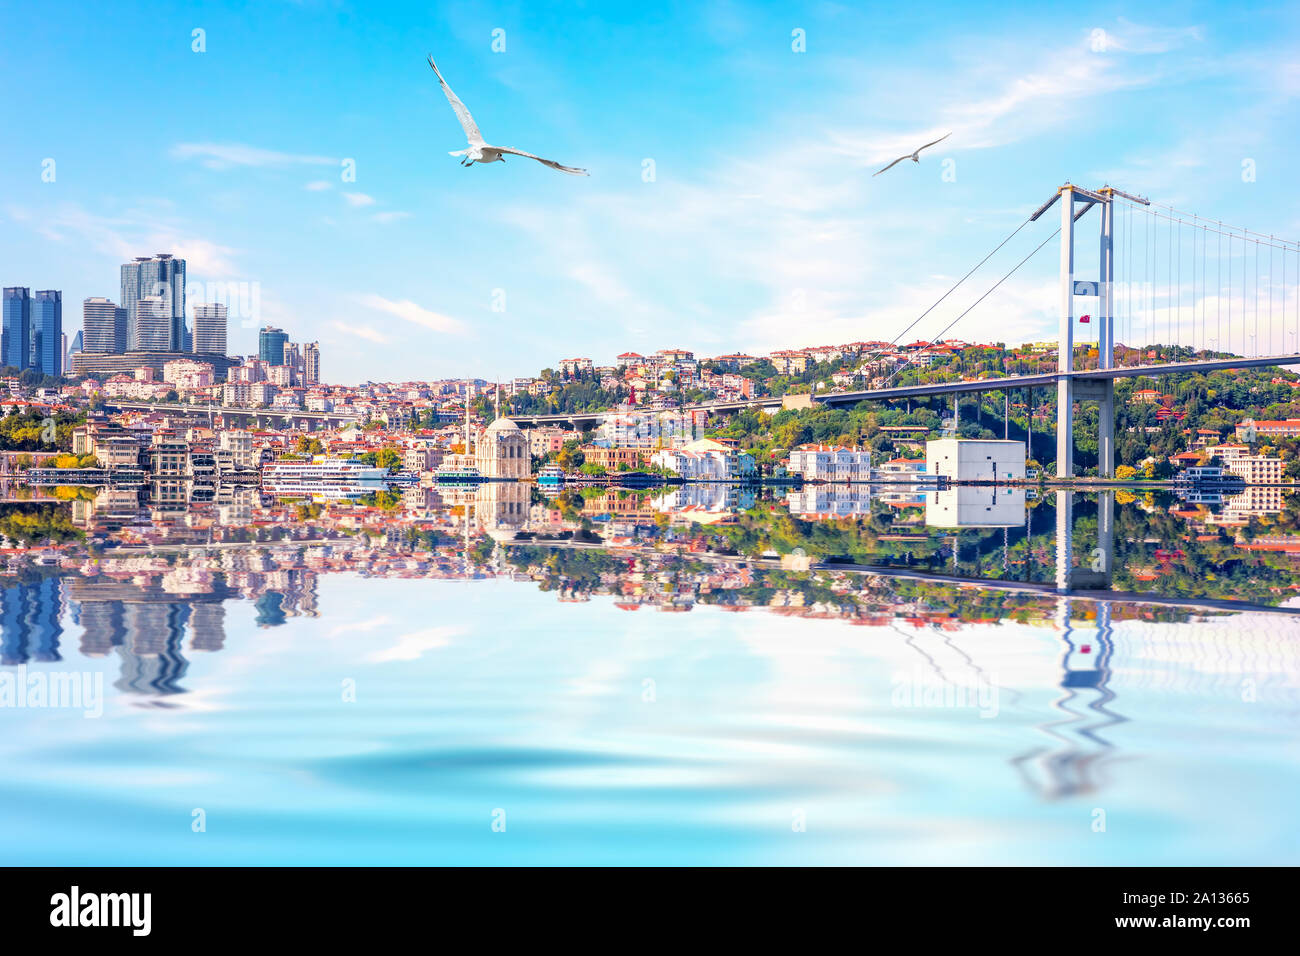 Die Bosporus-brücke, die Ortaköy Moschee und das skyscrappers auf dem Hintergrund, Istanbul Stockfoto